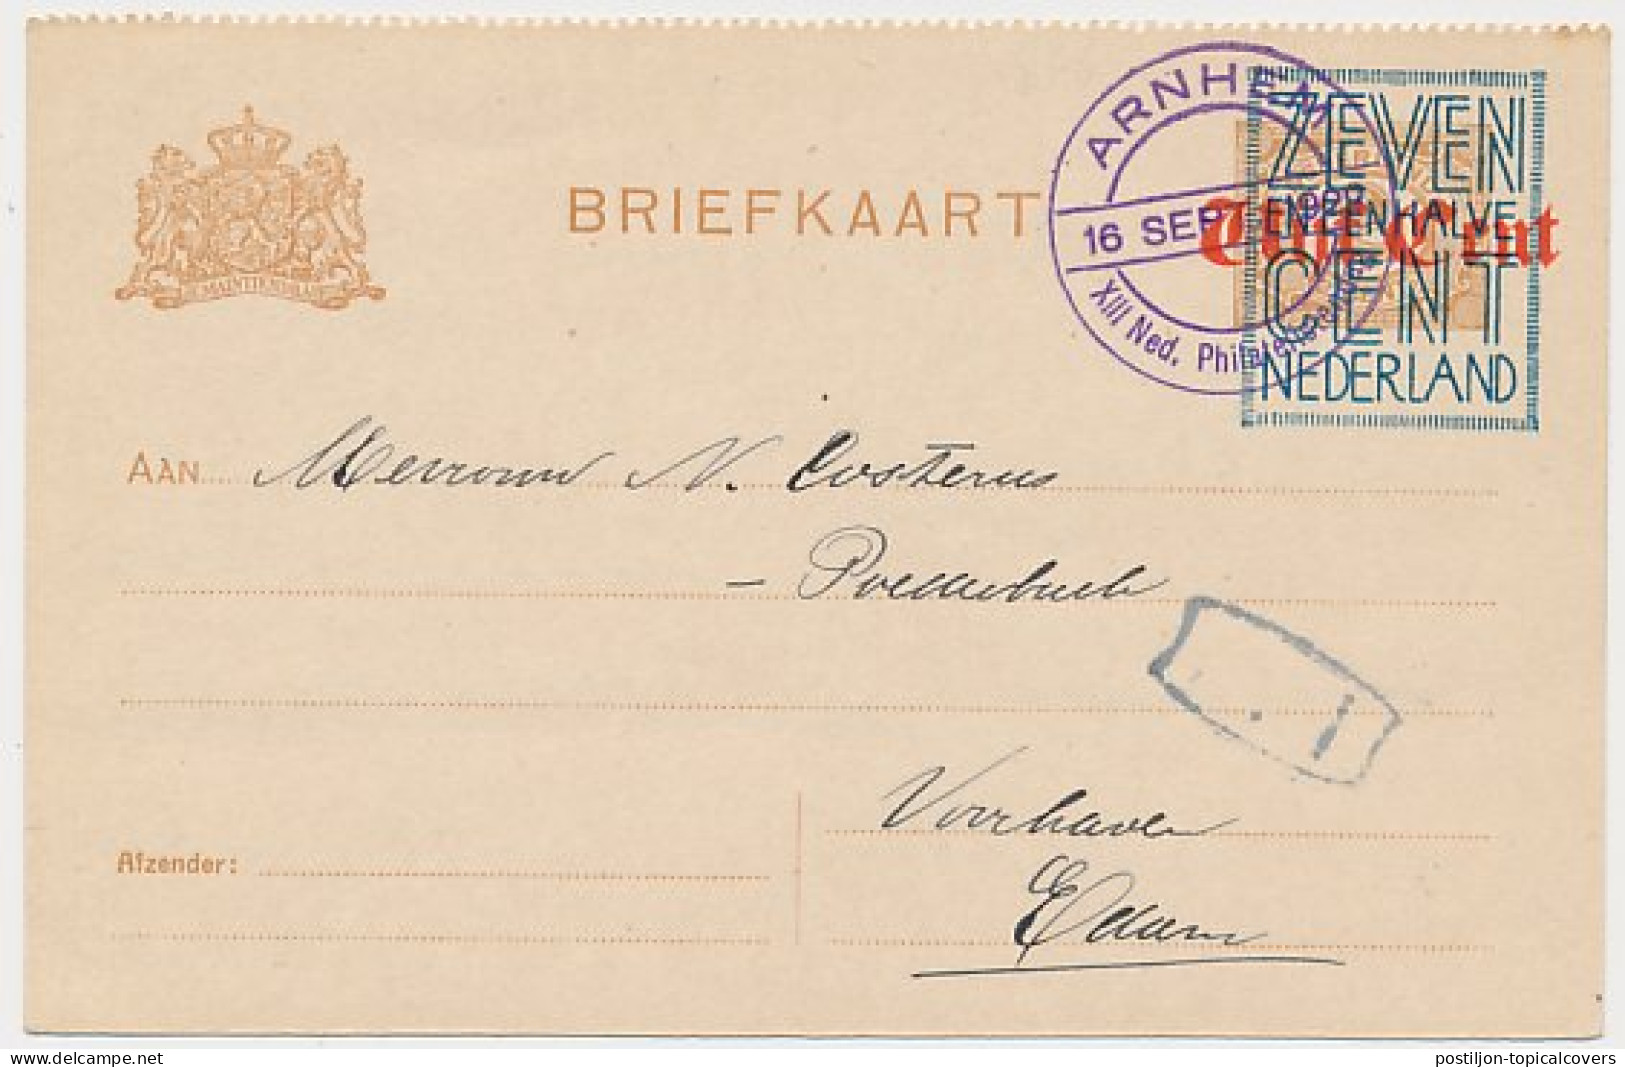 Briefkaart G. 140 B II Arnhem - Edam 1922 - Postwaardestukken